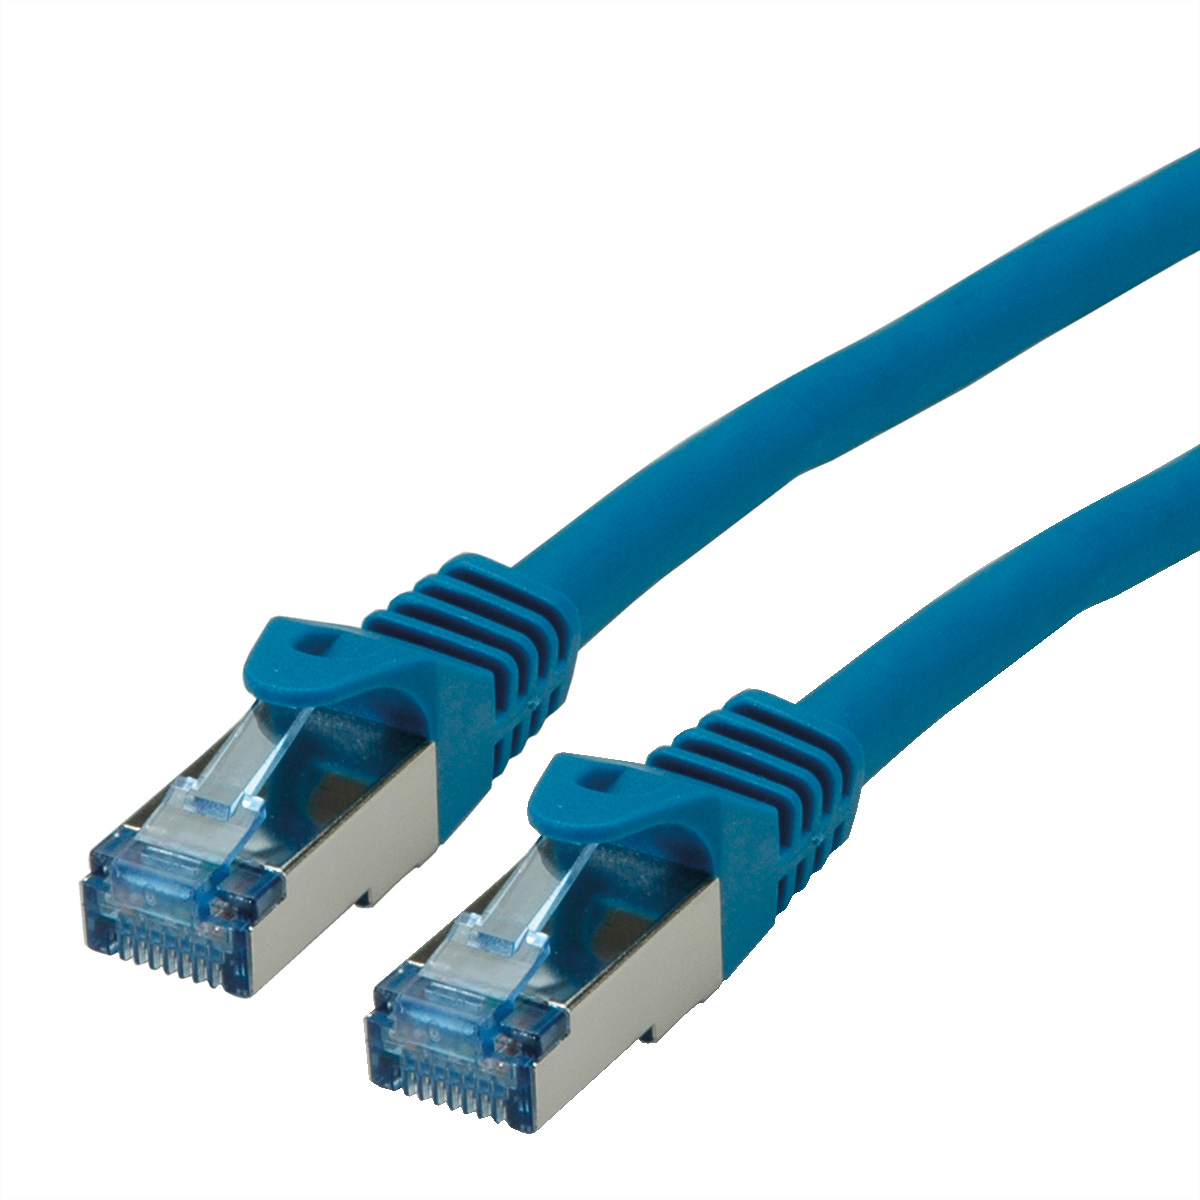 ROLINE Patchkabel Kat.6A S/FTP (PiMF), Component Level, LSOH, blau, 5 m